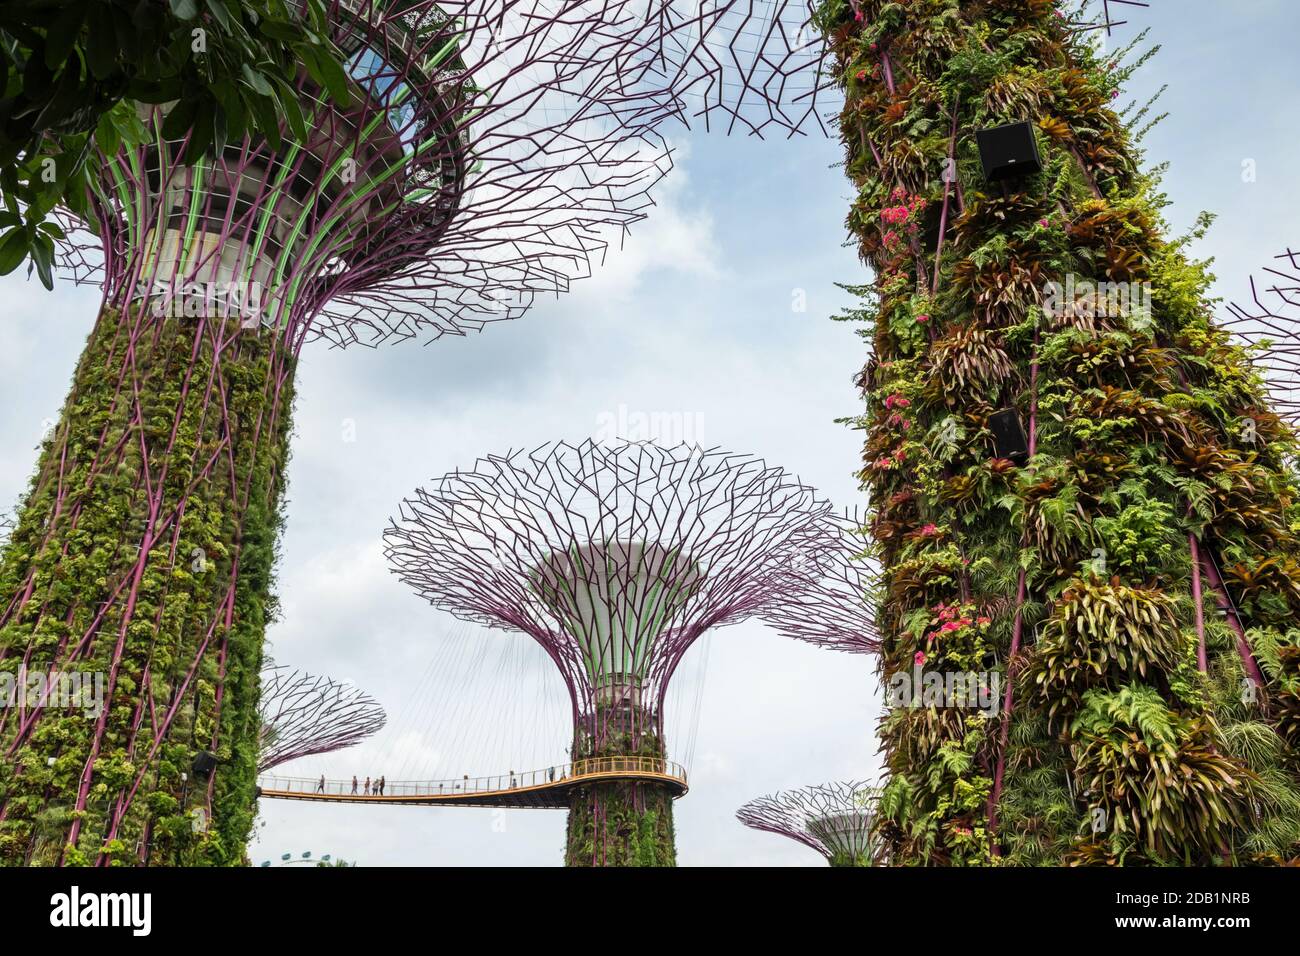 Les superarbres de Gardens by the Bay, un parc naturel de Singapour, sont de grands canopées offrant de l'ombre dans la journée et une lumière exaltante la nuit Banque D'Images